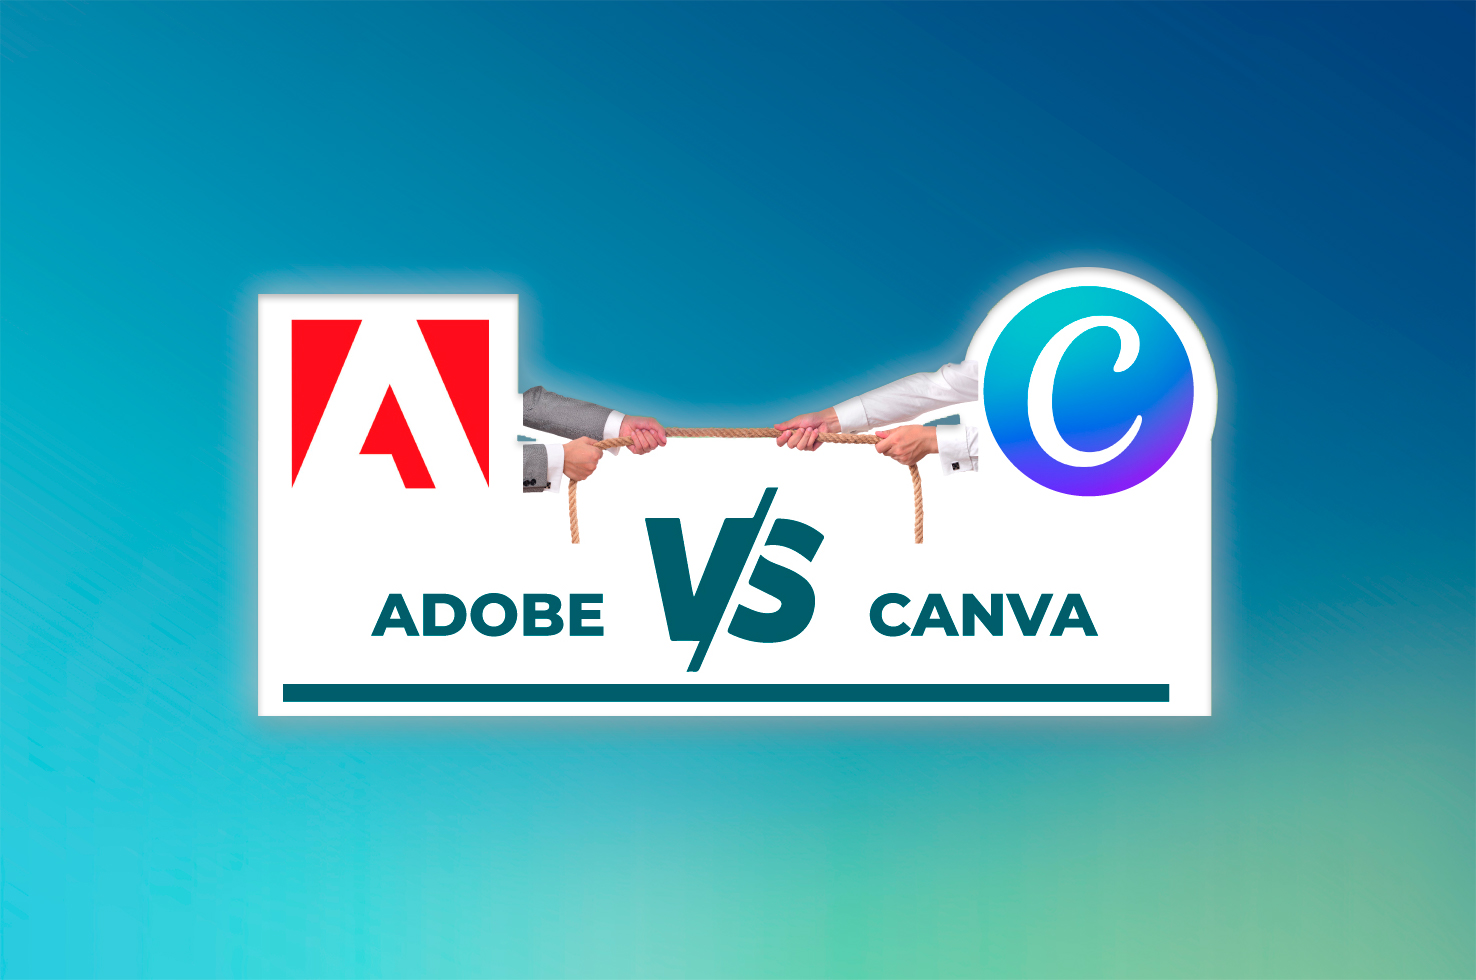 Adobe crea una nueva herramienta simple y rápida como Canva